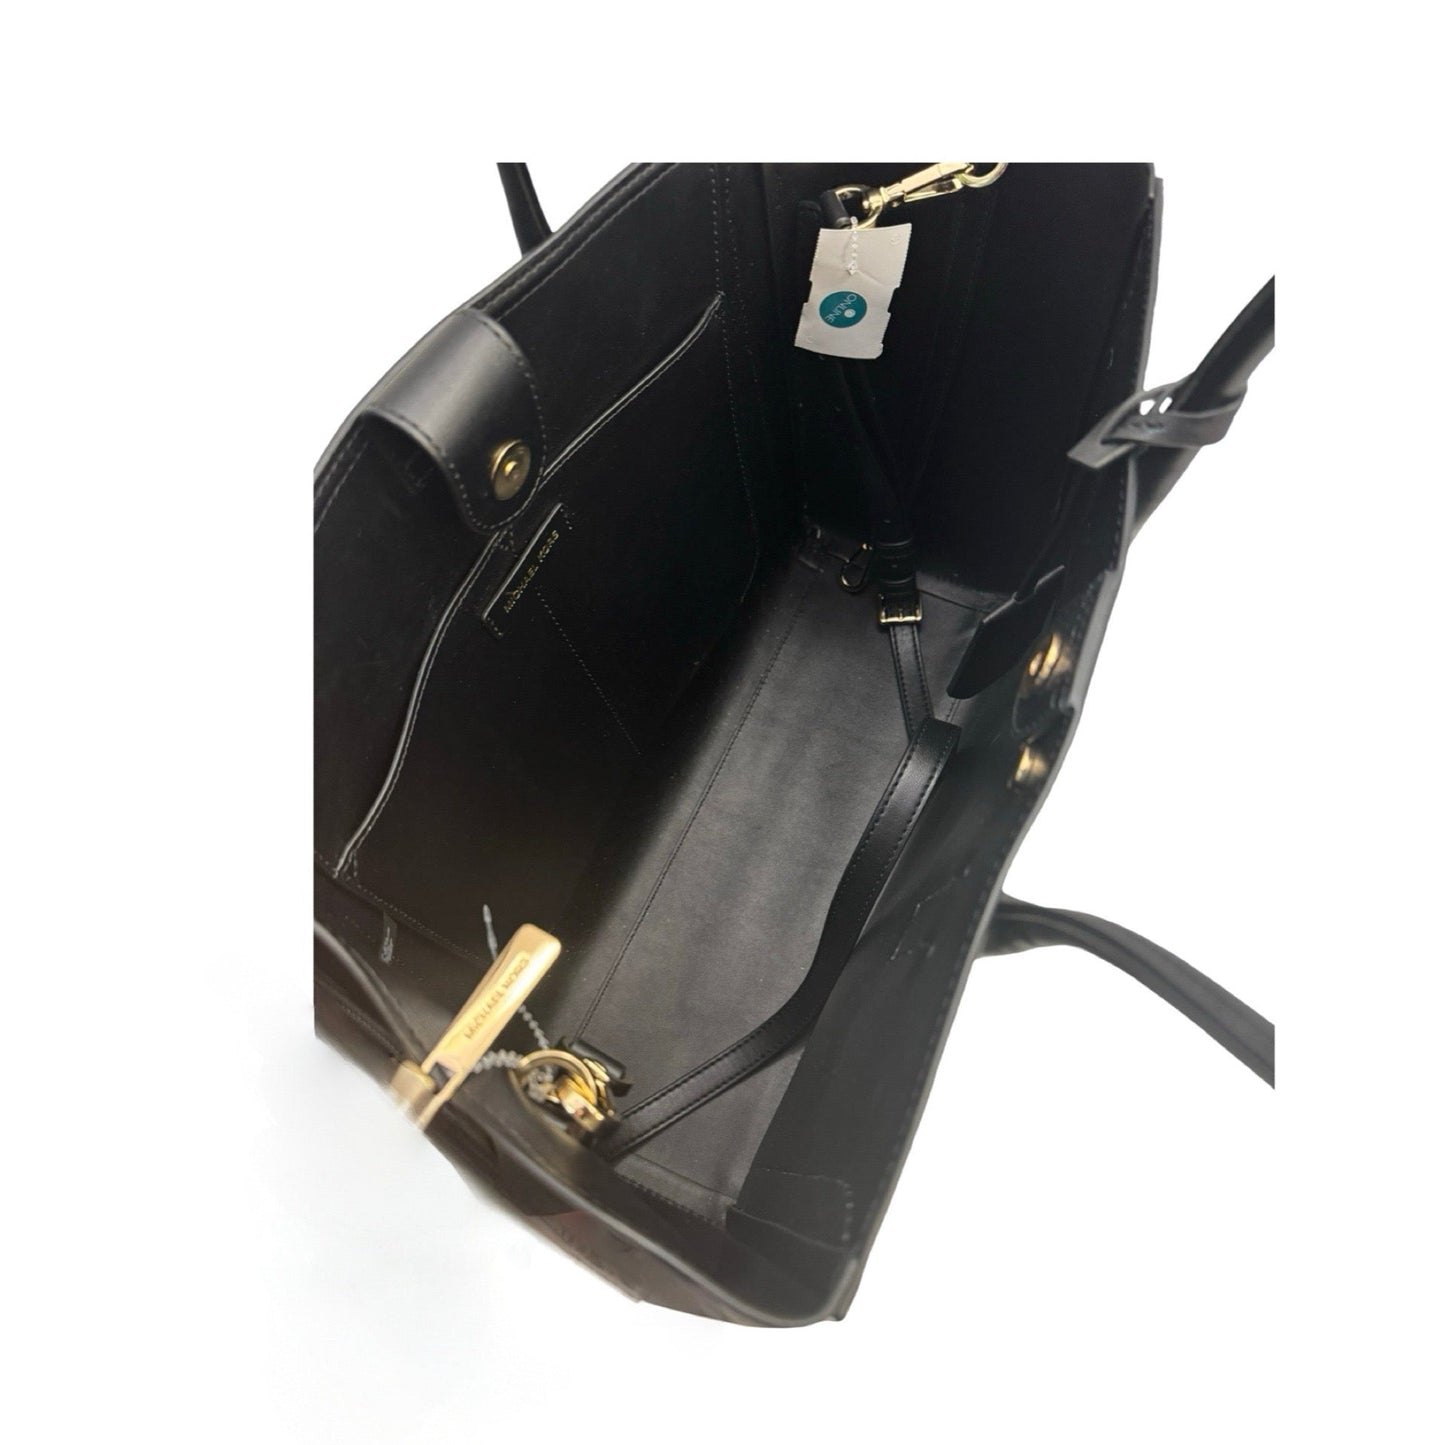 Kali Vegan Leather with Laptop Case Black Tote Shoulder Handbag Designer By Michael Kors  Size: Large